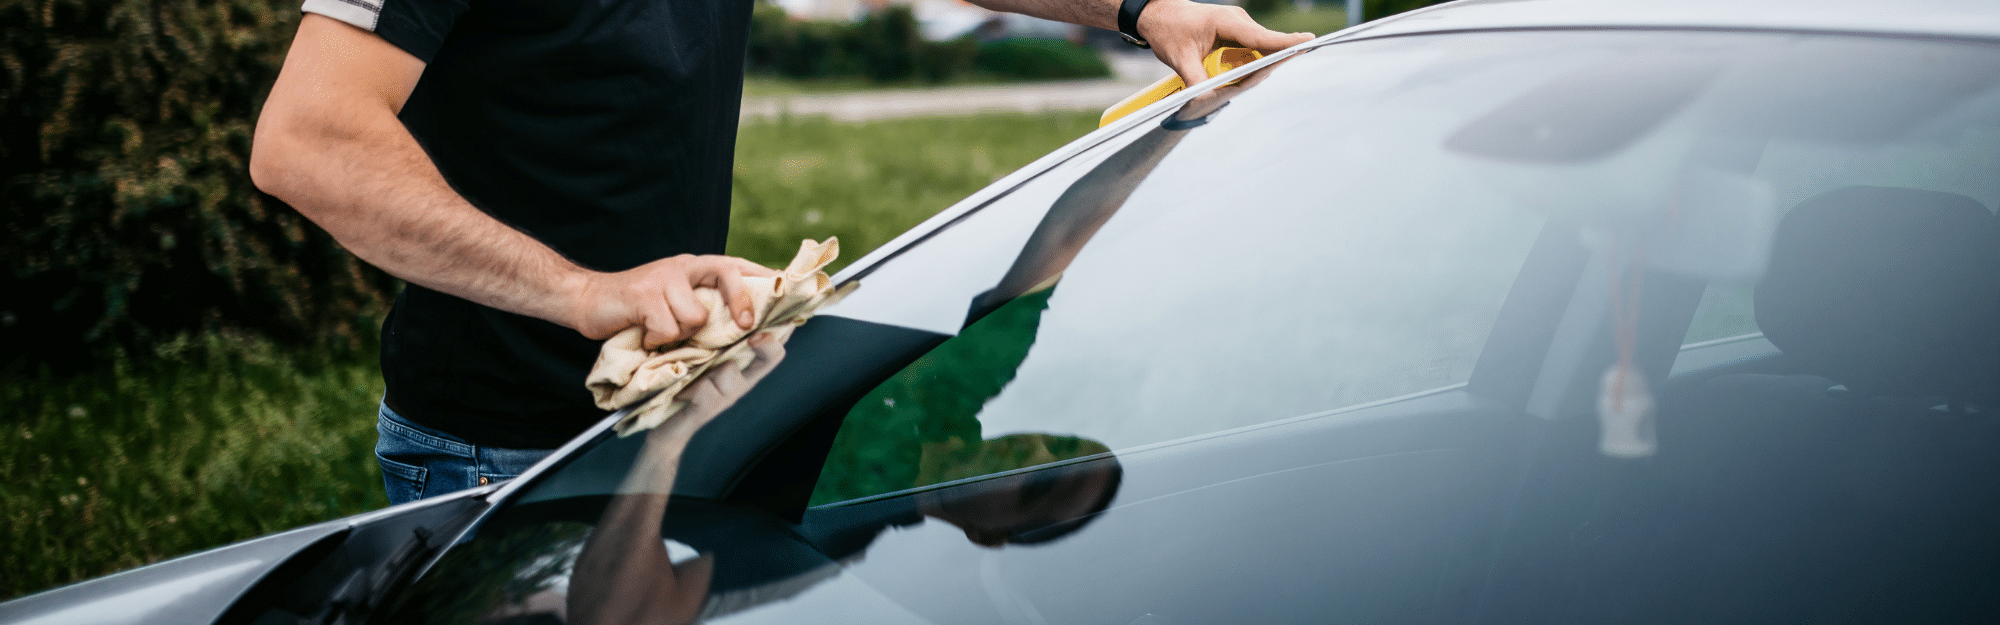 Comment nettoyer le pare-brise intérieur d'une voiture ?